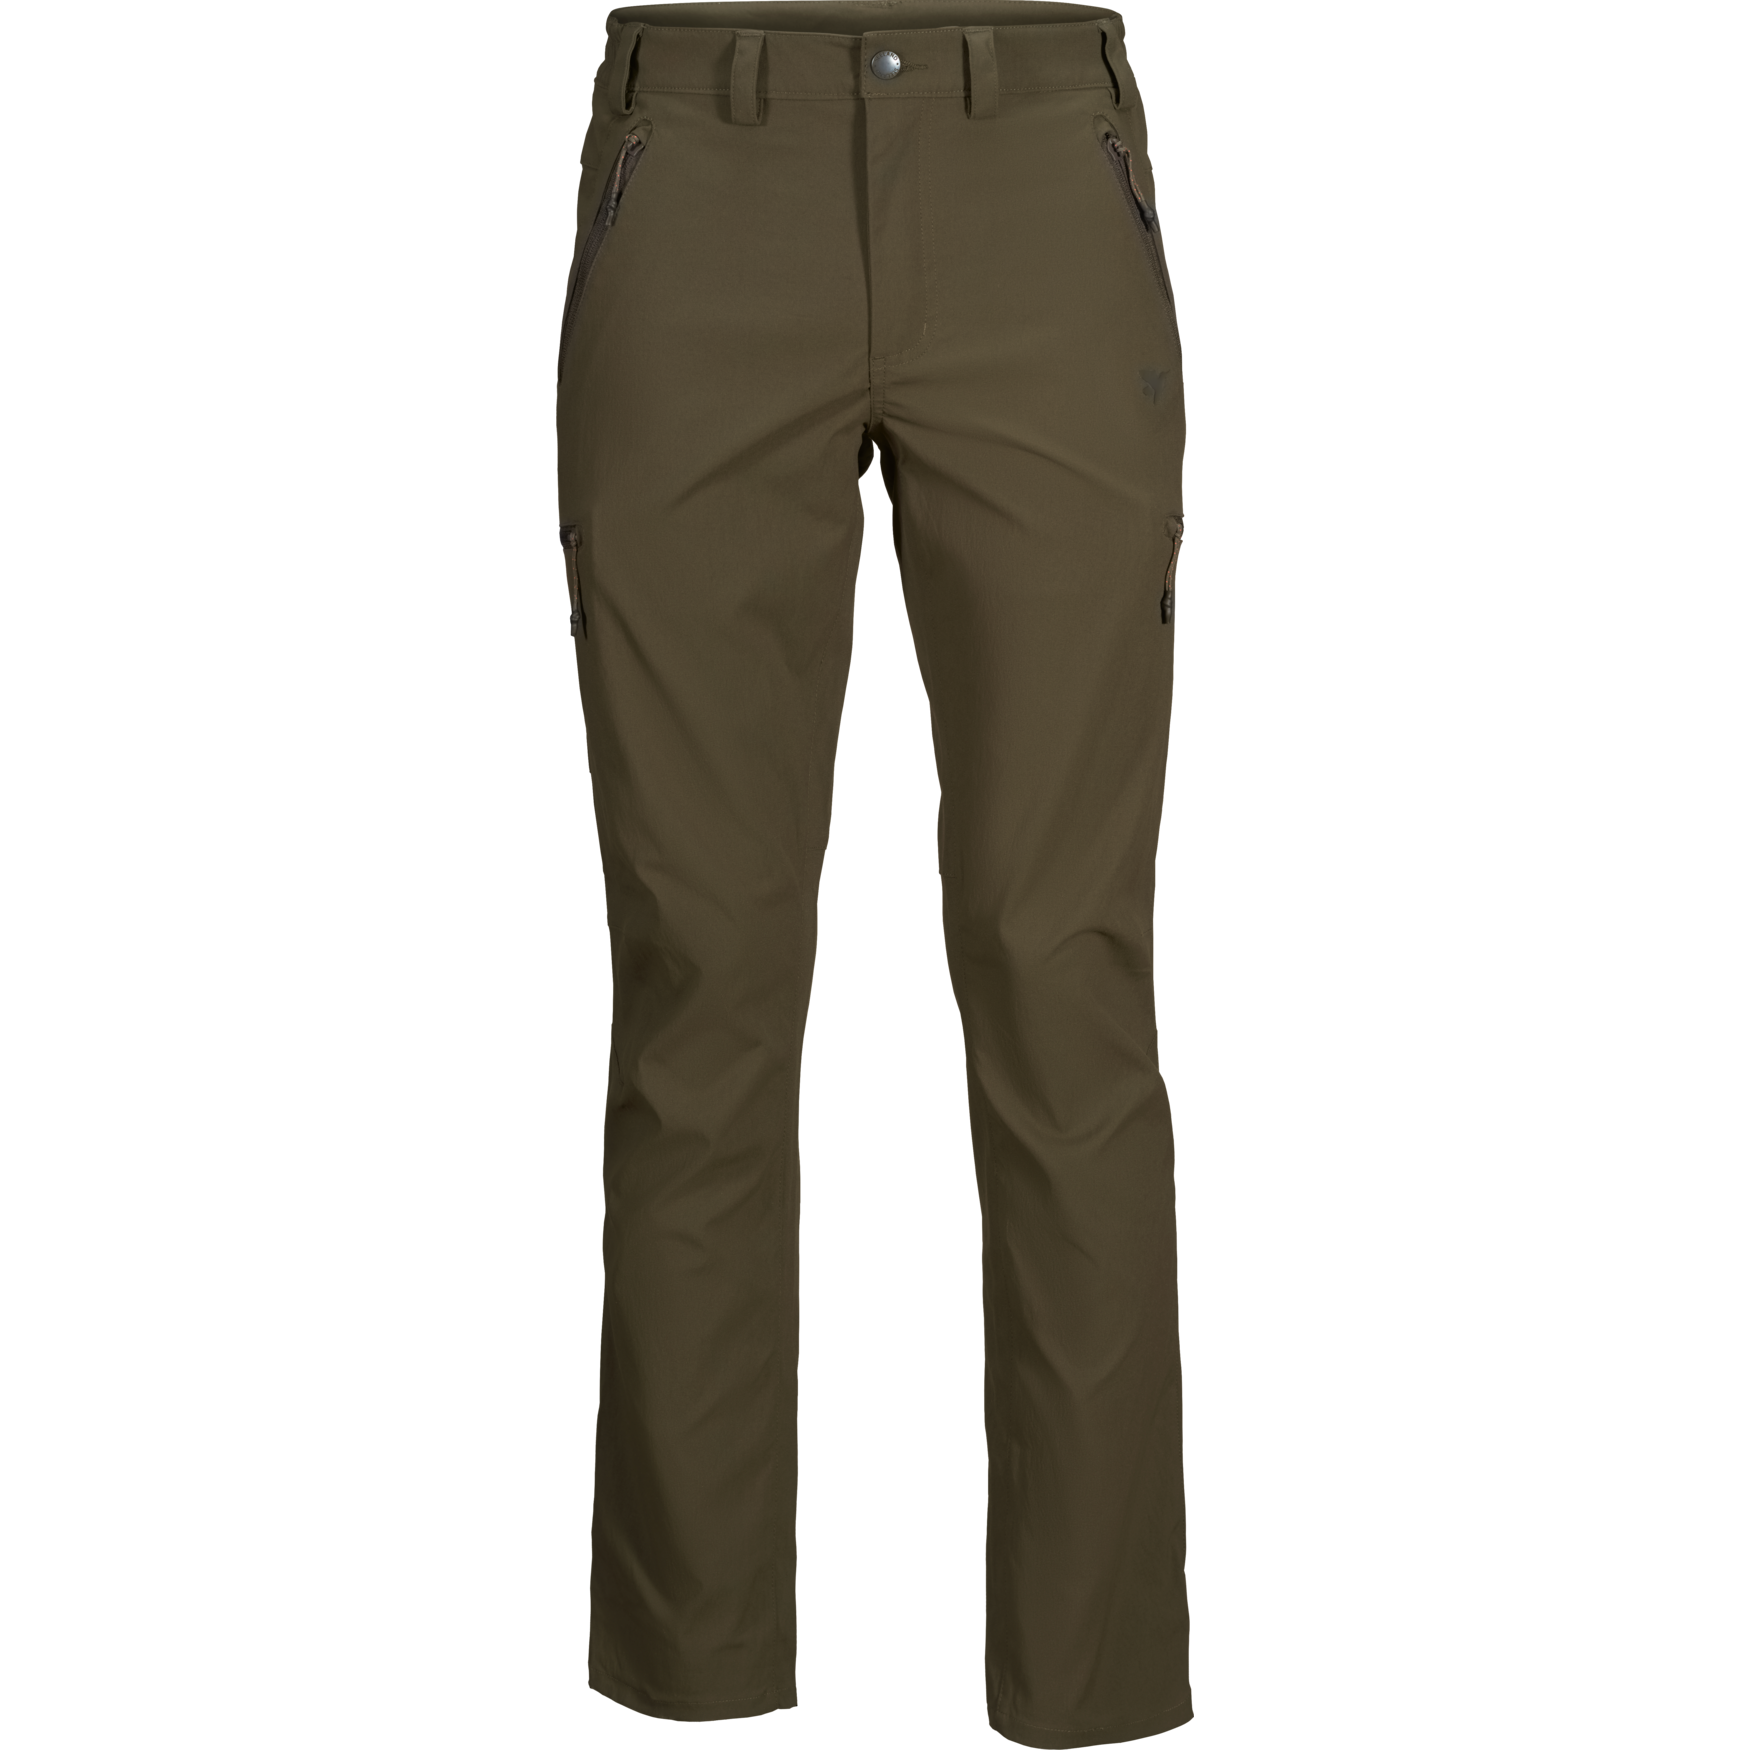 Spodnie Outdoor Stretch trousers - idealne spodnie terenowe